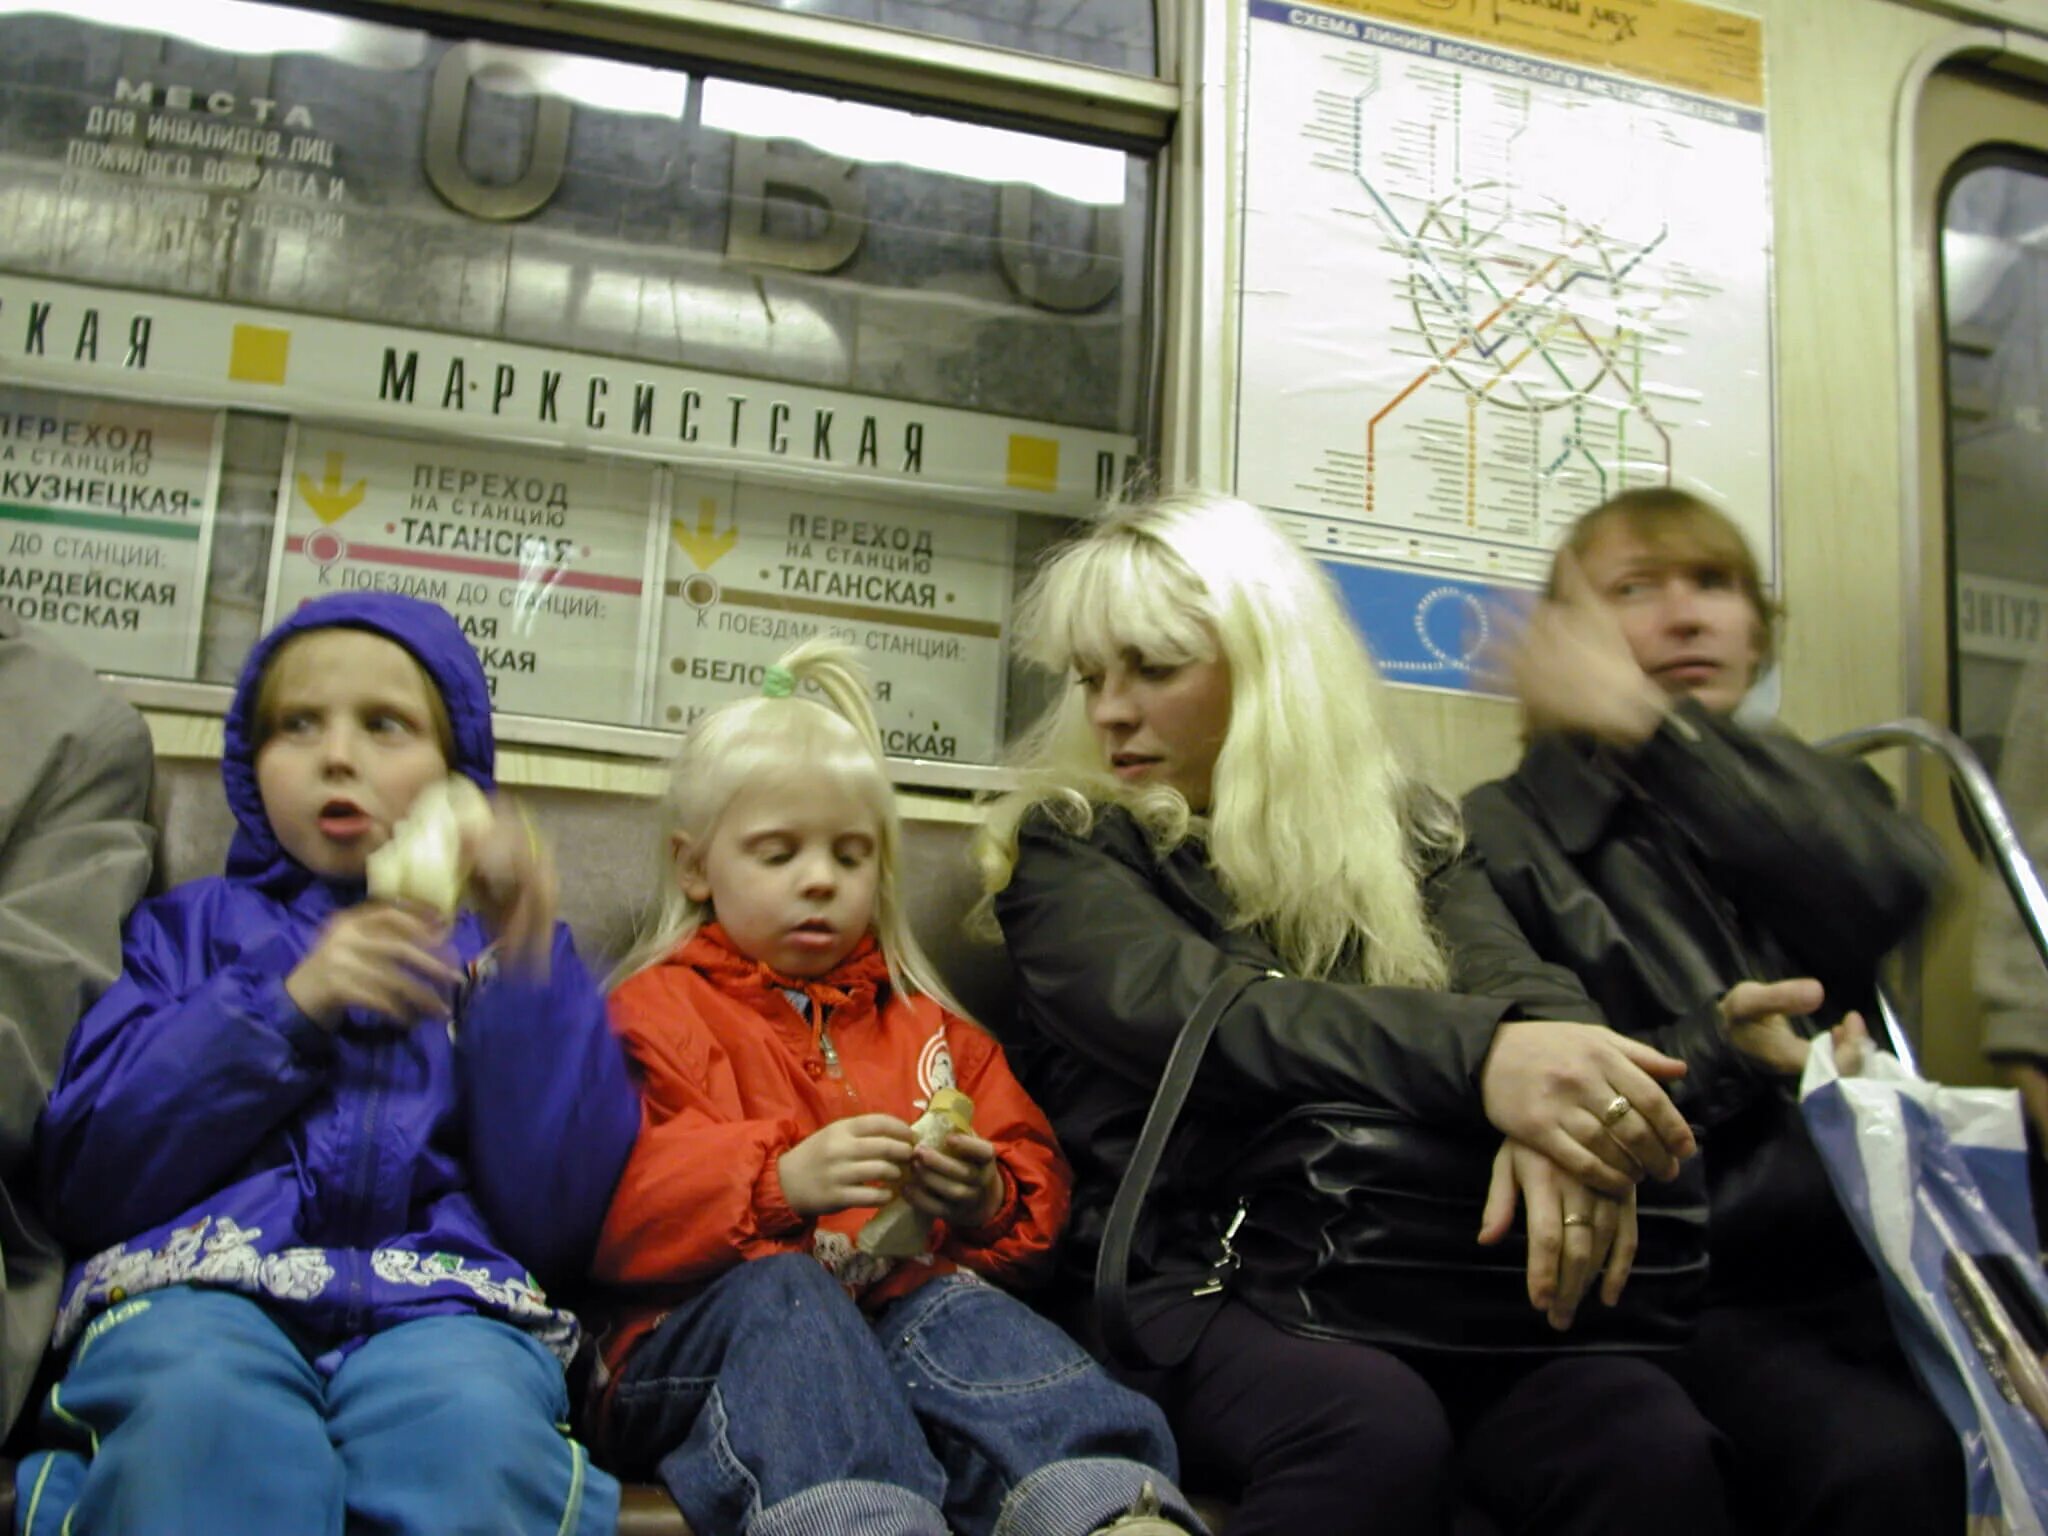 Метро для детей. Дети в метро Москва. Московское метро для детей. Женщина с ребенком в метро. Метрополитен дети